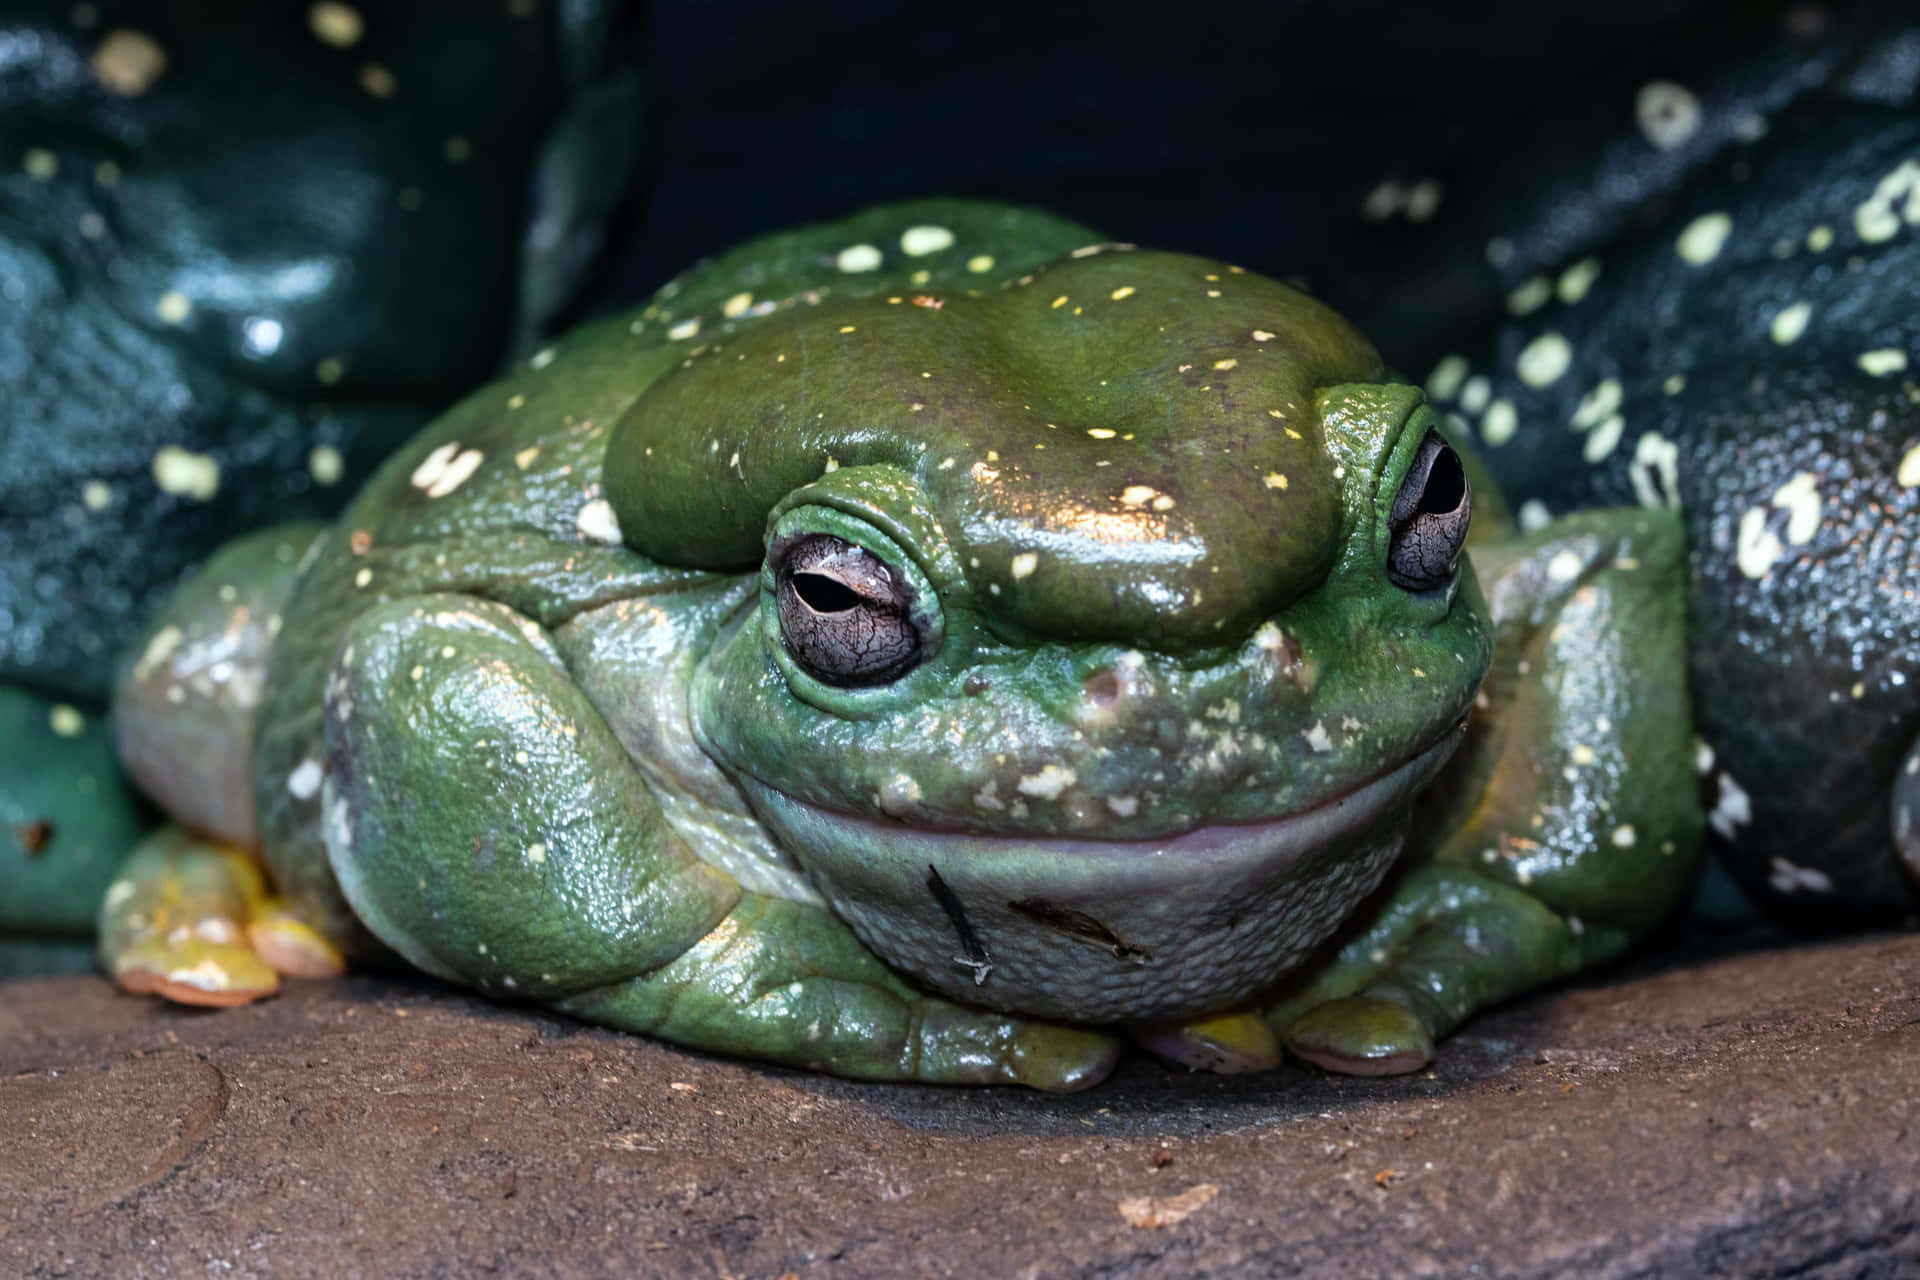 Einschöner Grüner Frosch Sitzt Auf Einem Blatt.